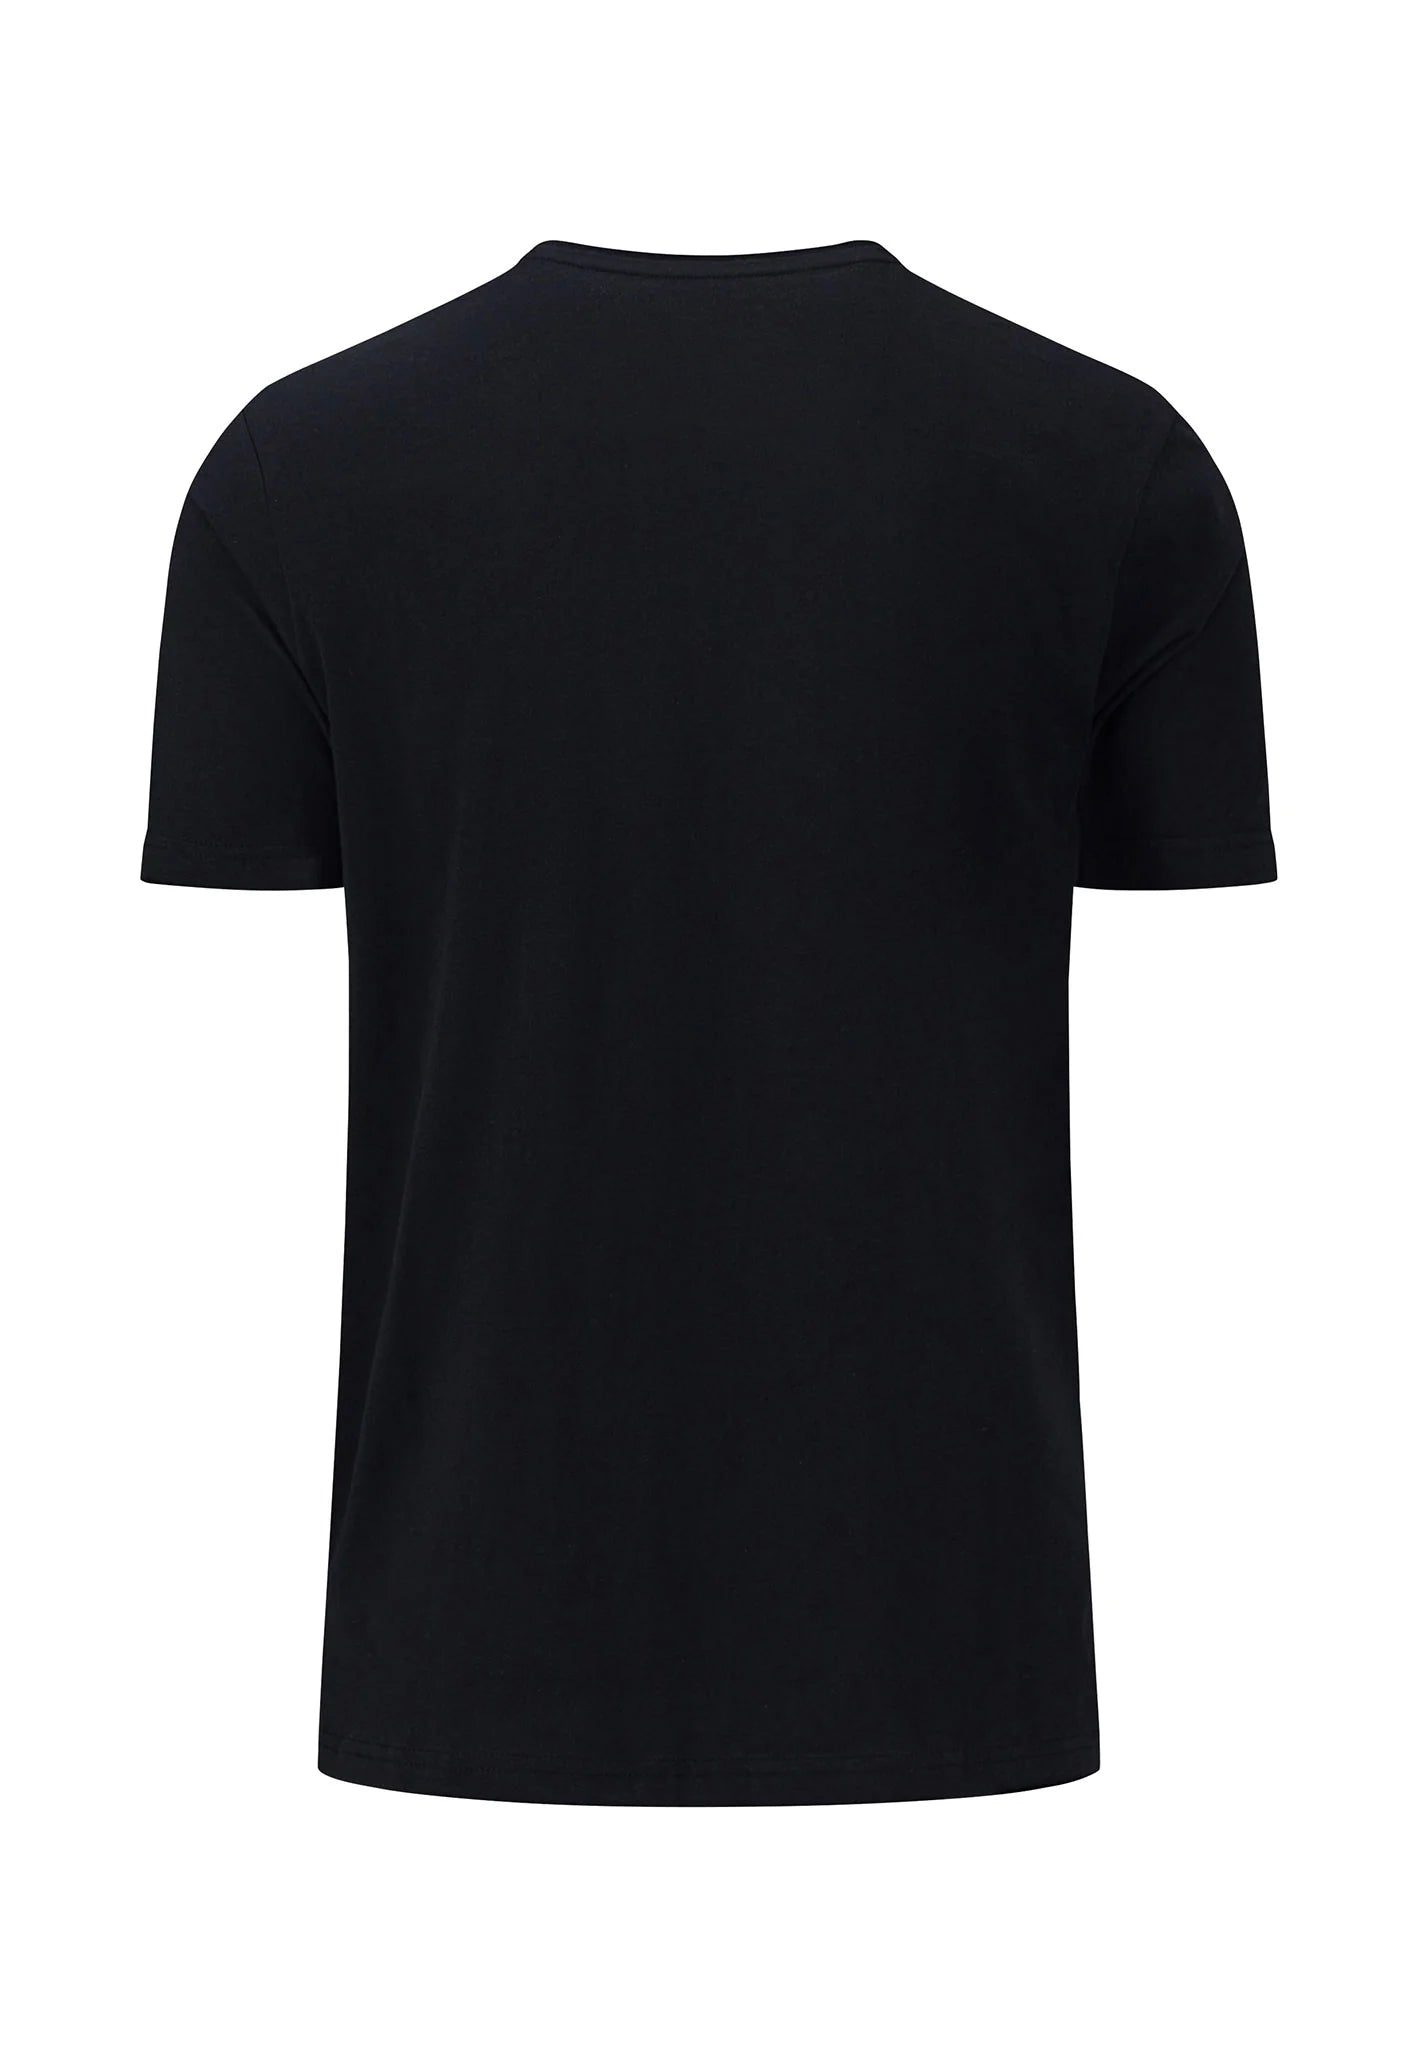 FYNCH HATTON T-Shirt - Men's Round Neck – Black